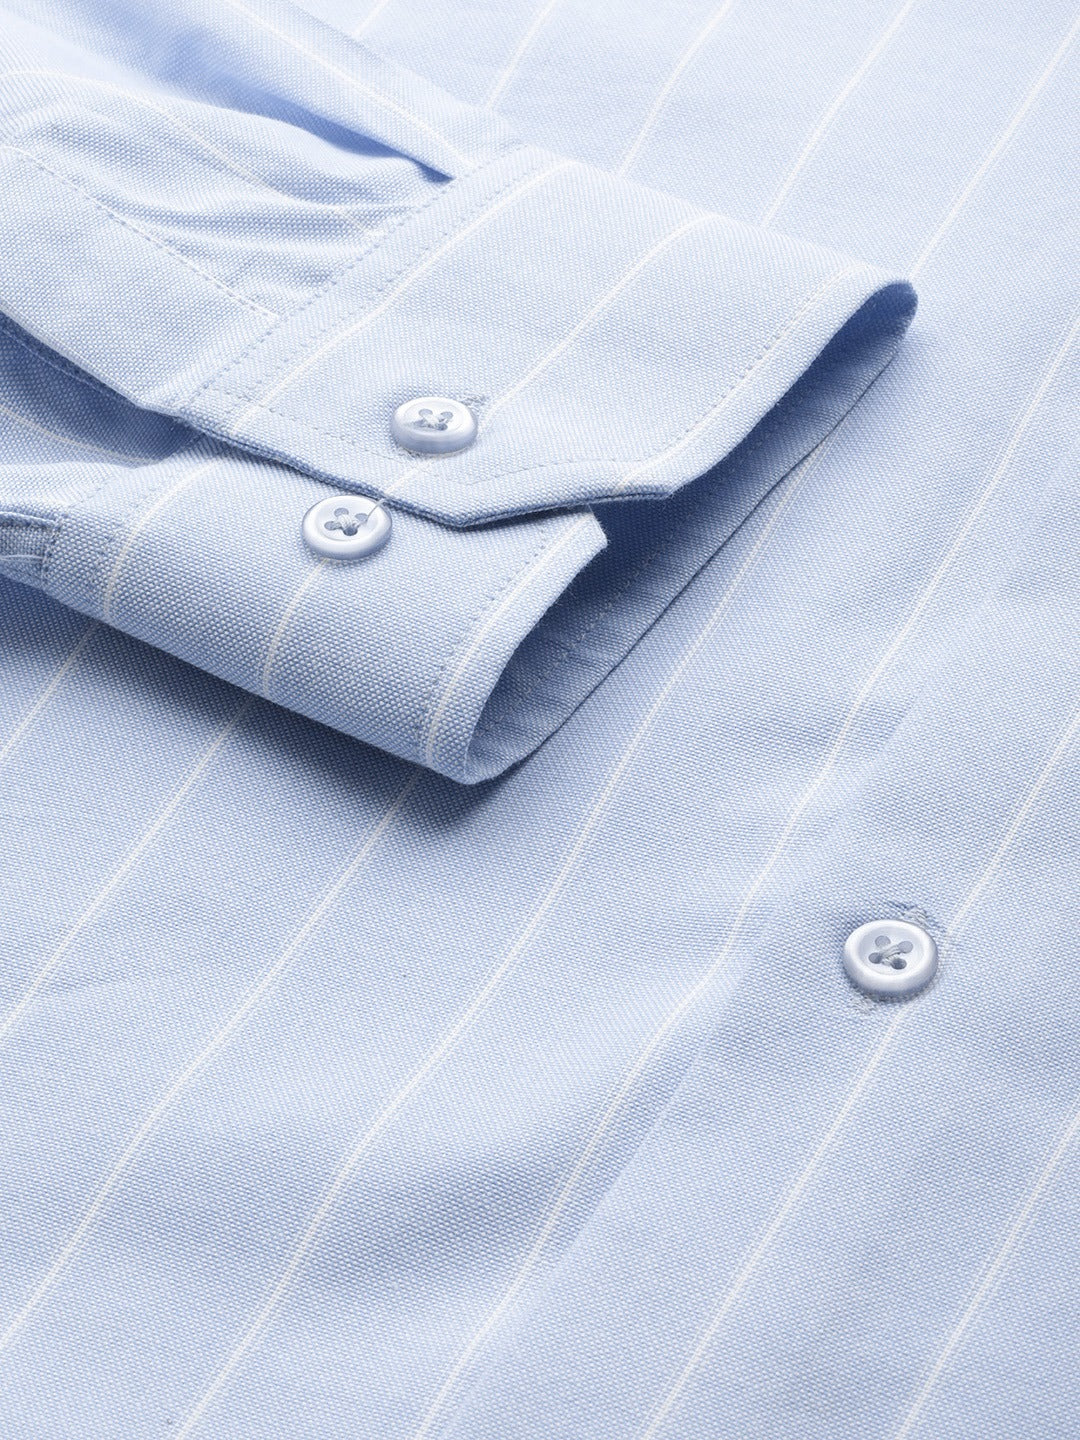 Men Sky Blue Stripes Pure Cotton Slim Fit Formal Shirt